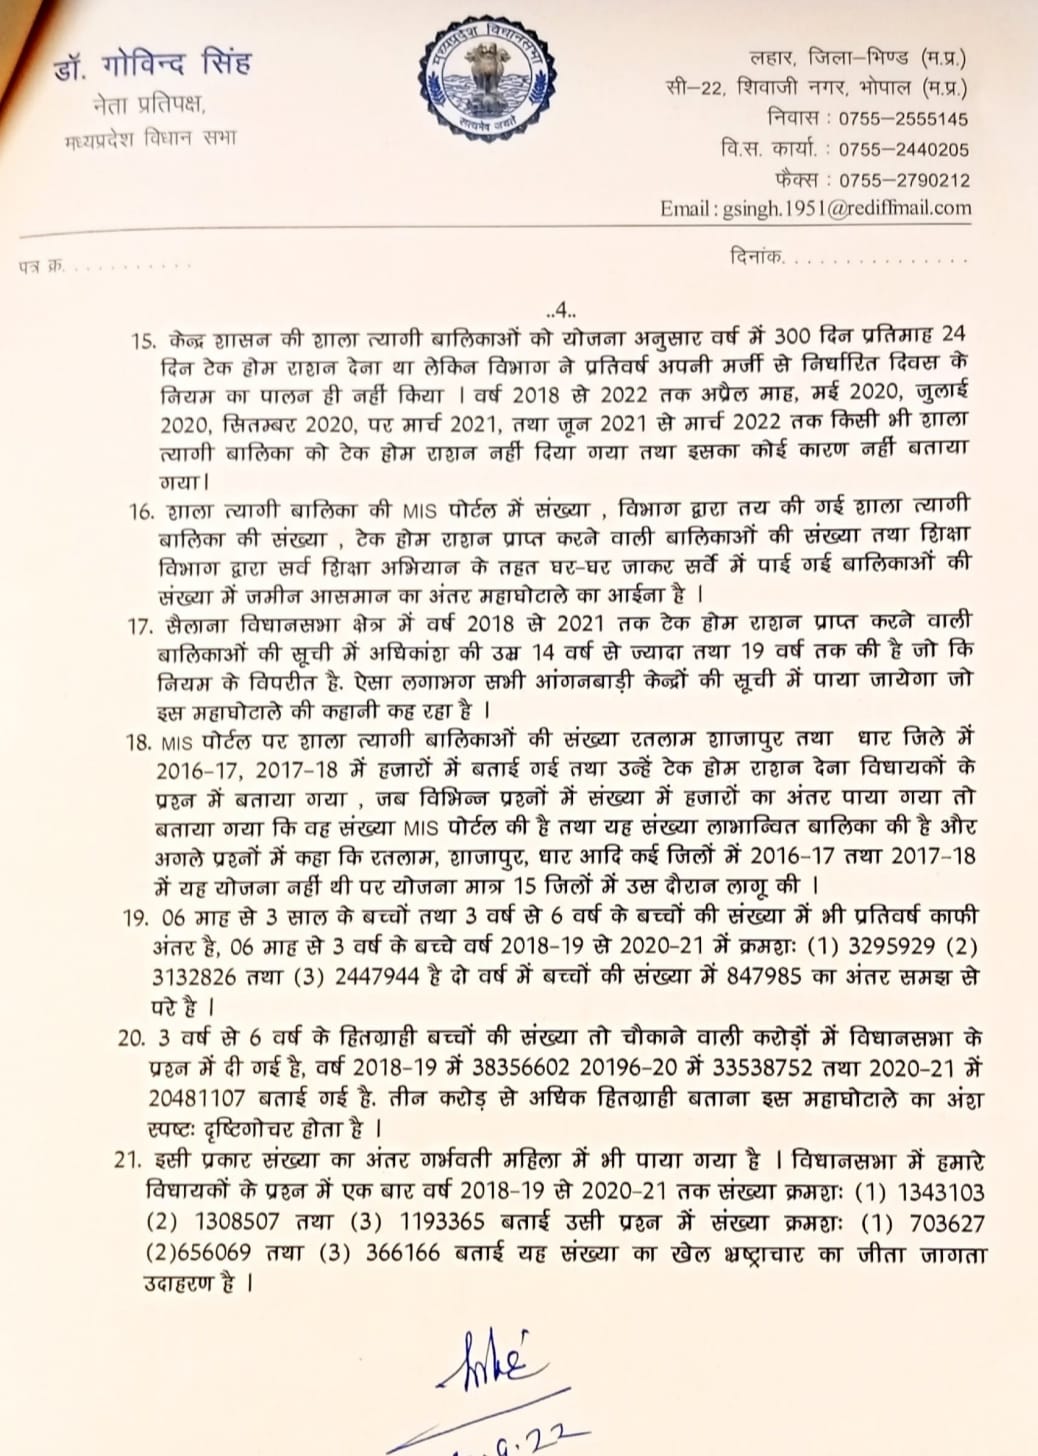 नेता प्रतिपक्ष डॉ गोविंद सिंह ने लिखा राज्यपाल को पत्र, पोषण आहार घोटाले को लेकर की ये बड़ी मांग